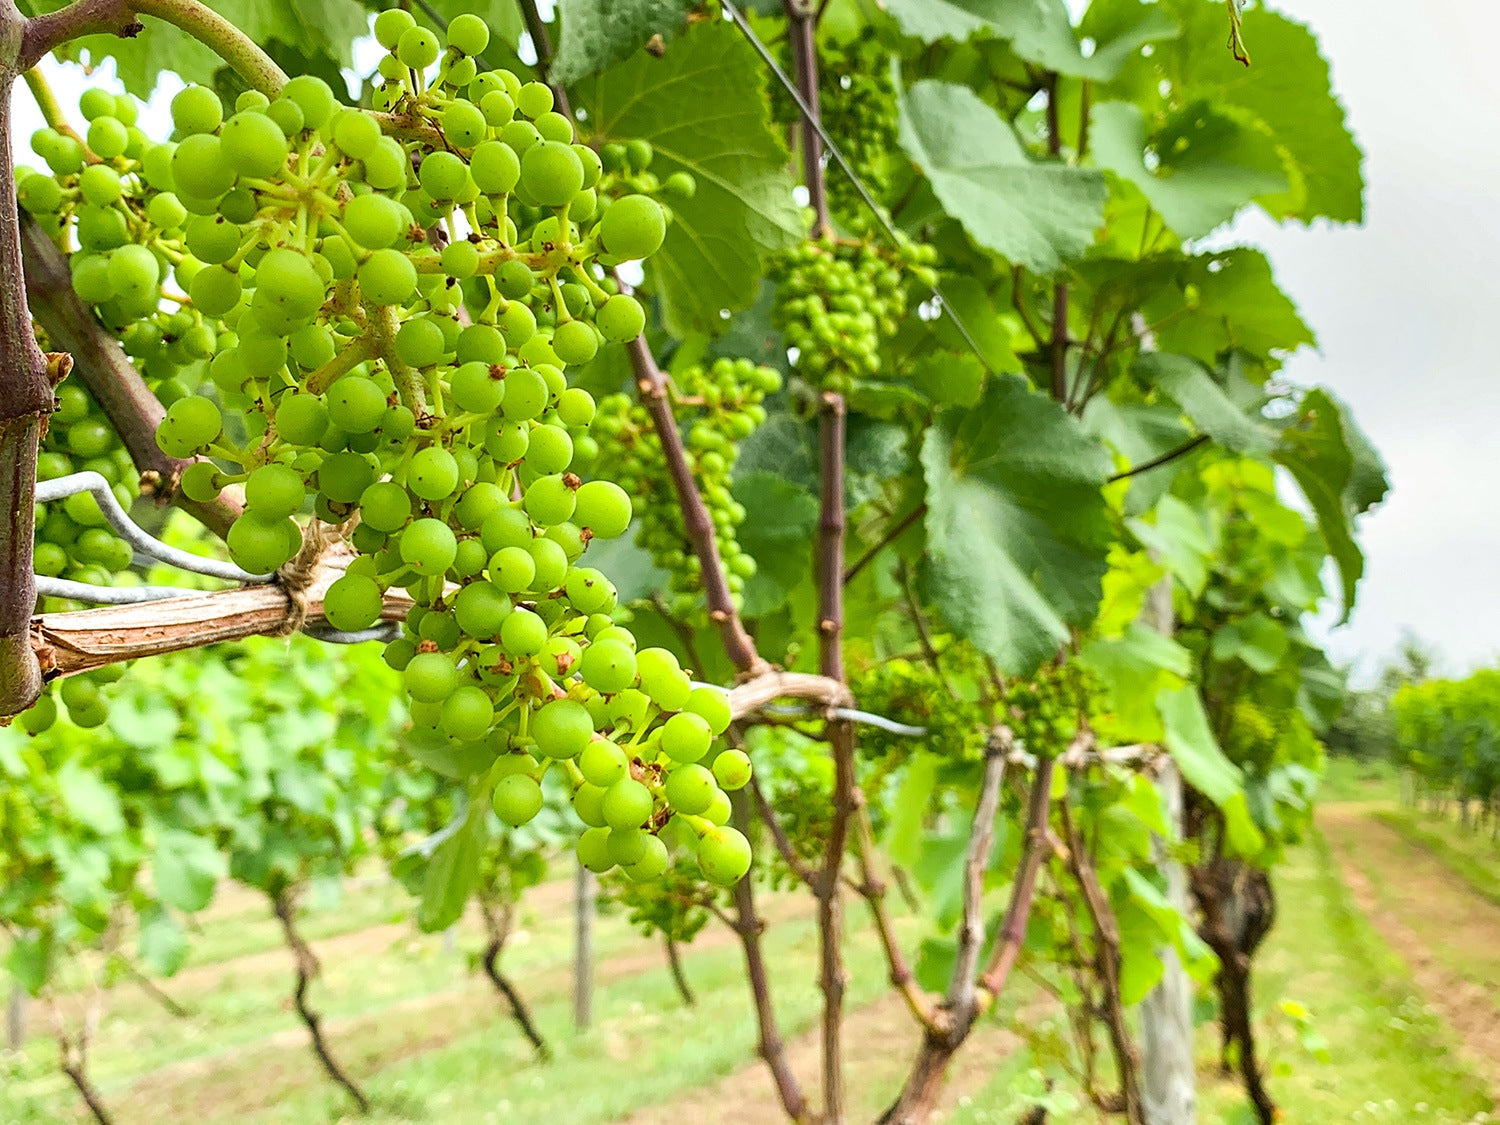 ツヴァイゲルトは実が詰まった房を造るので灰カビに侵されやすい。登醸造の葡萄は湿気が溜まらないよう、早い段階から除葉がなされる。